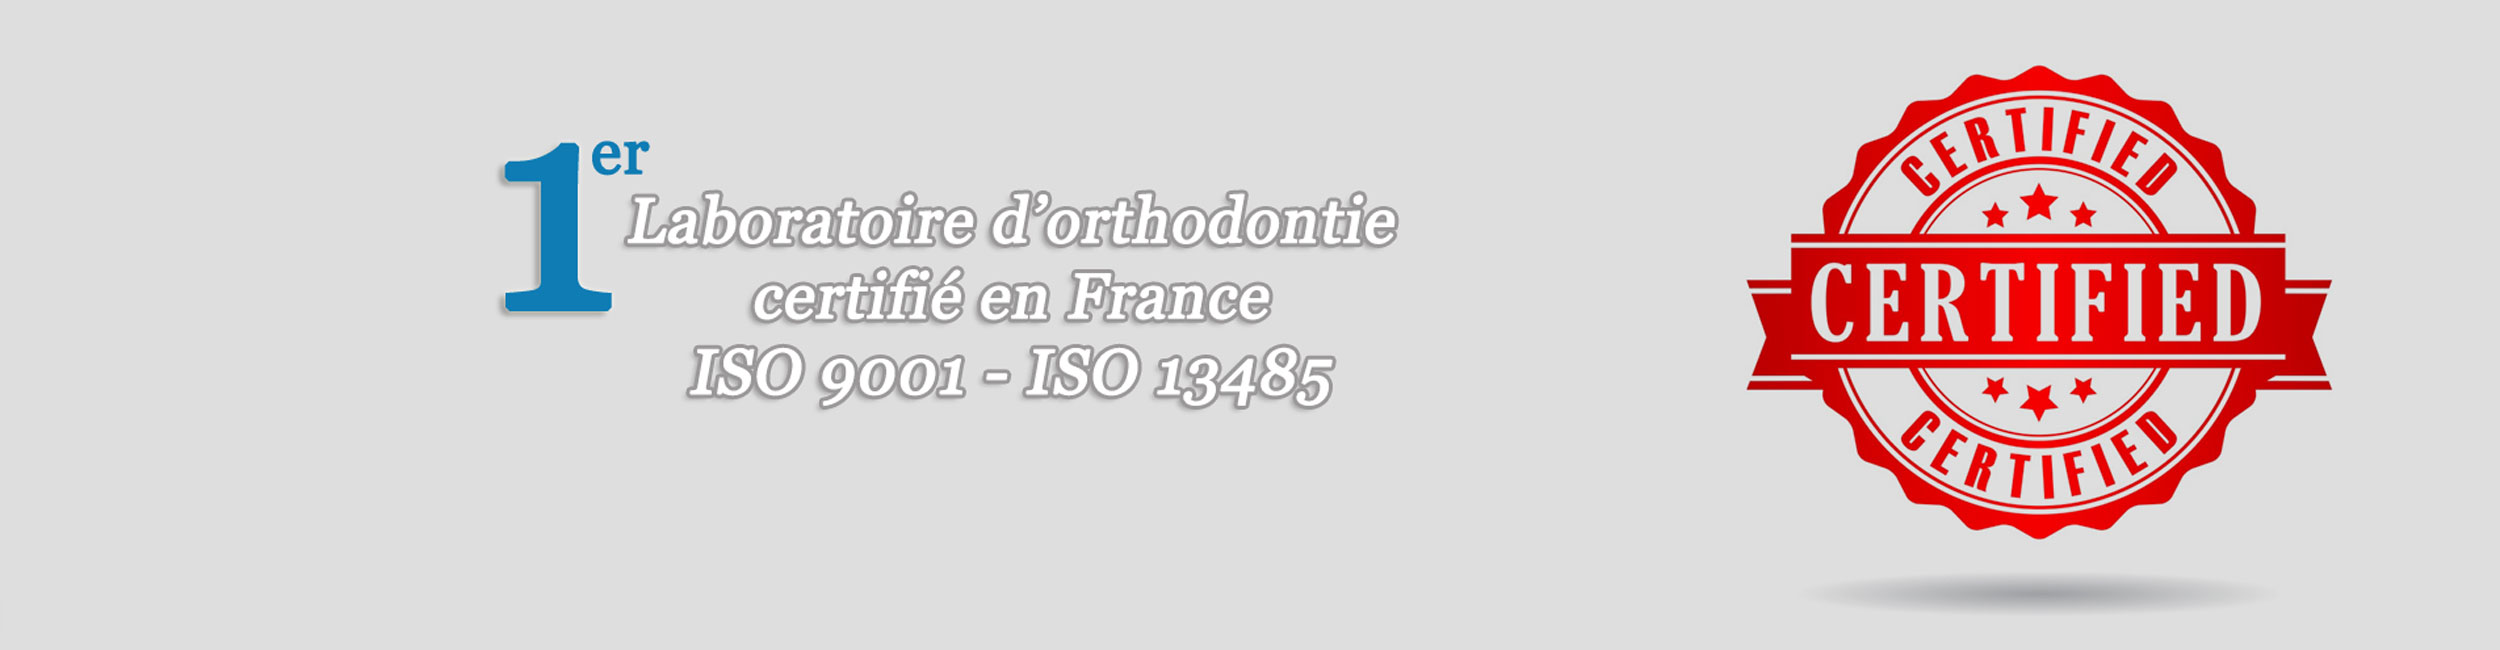 Nous sommes le premier laboratoire français d'orthodontie certifié ISO 9001 et ISO 13485.